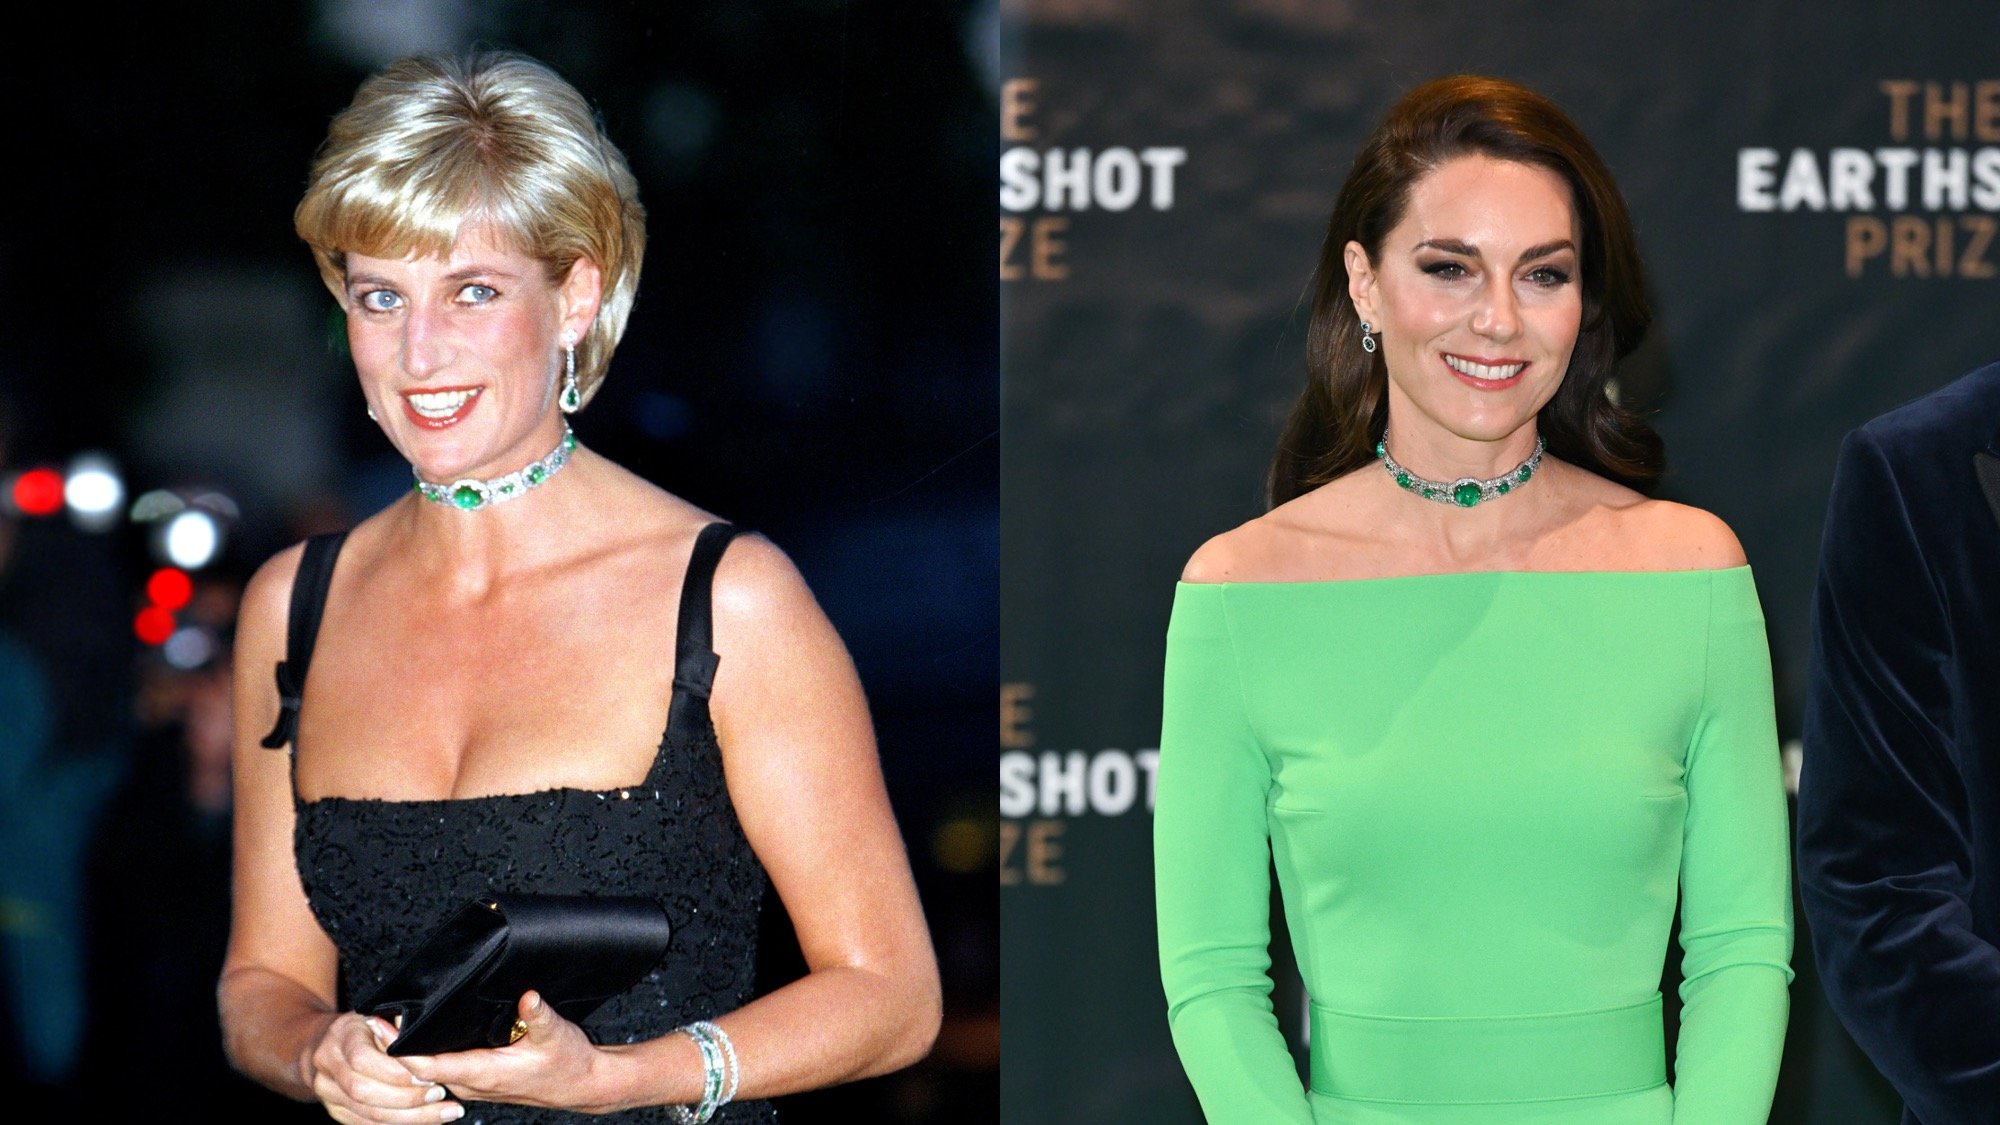 L'esperto di linguaggio del corpo spiega i "paralleli" tra Kate Middleton e la principessa Diana